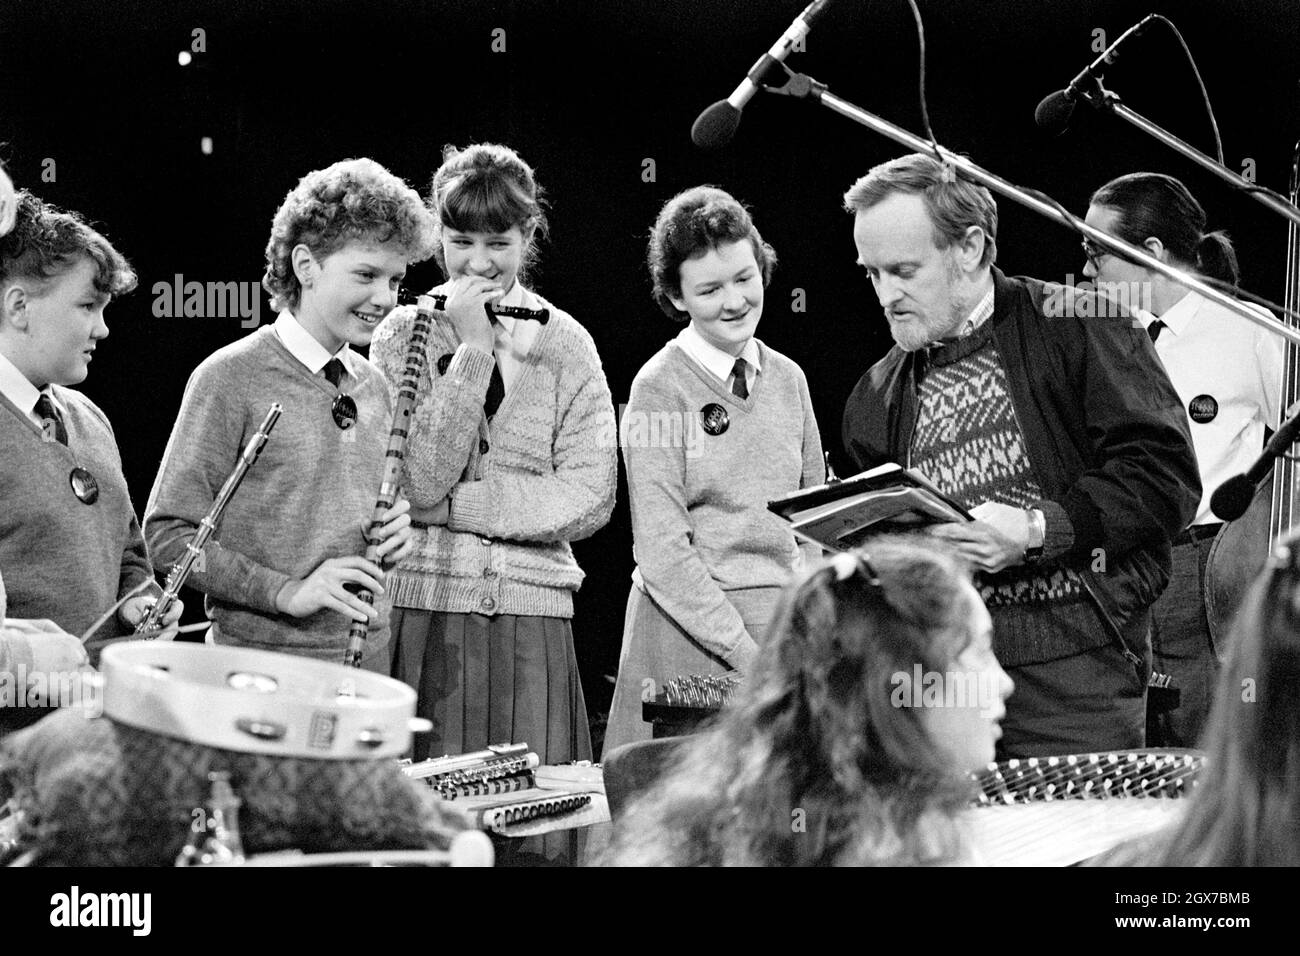 Richard Stilgoe, OBE, englischer Songwriter, Lyriker und Musiker, sprach mit jungen Musikern während einer Probe der Schools Prom in der Royal Albert Hall, London, im Jahr 1987. Stockfoto